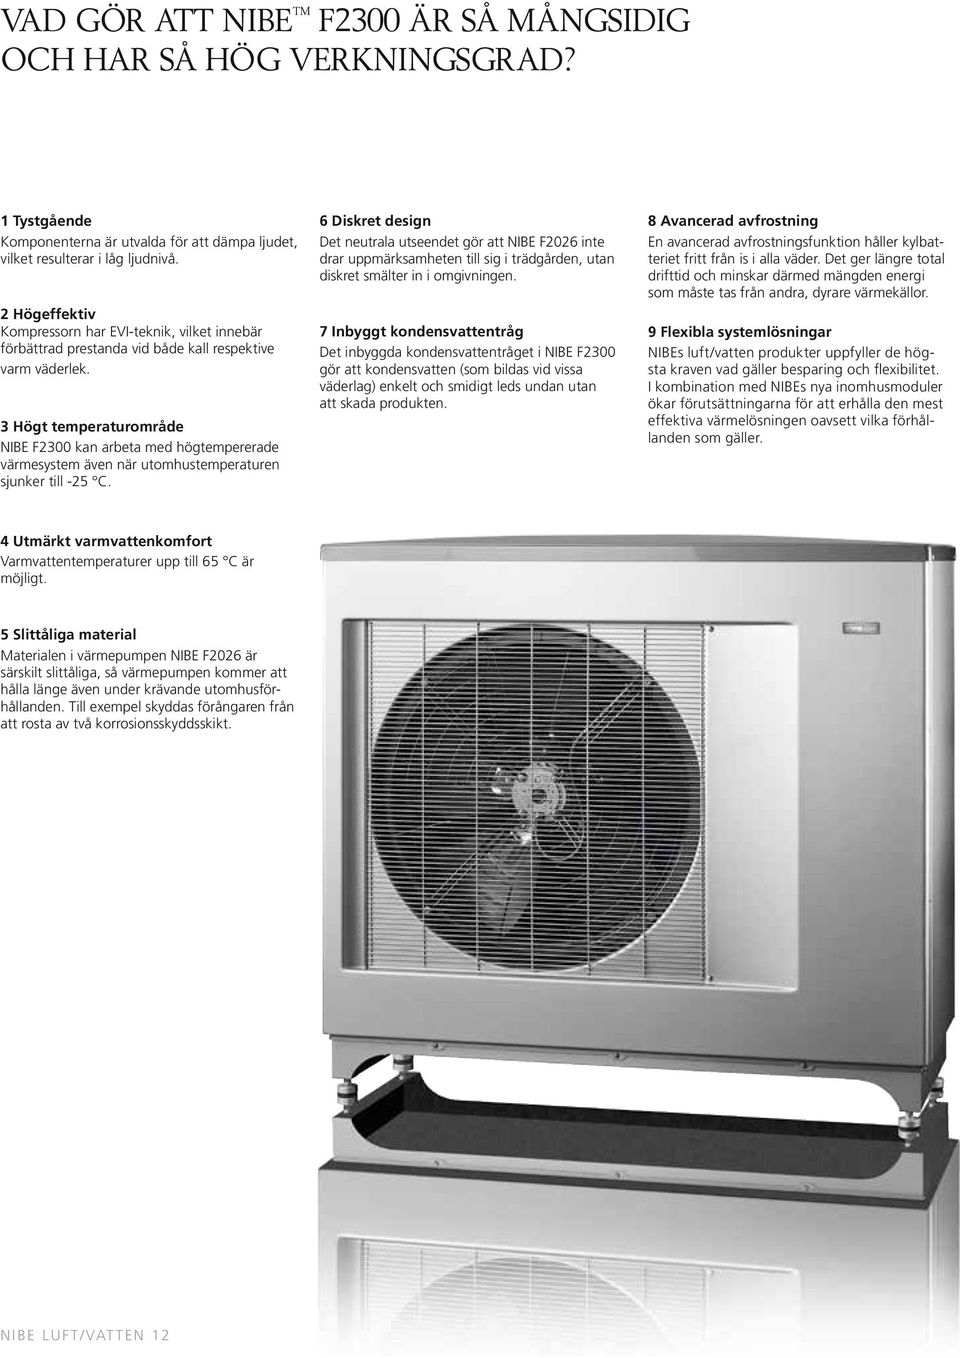 3 Högt temperaturområde NIBE F2300 kan arbeta med högtempererade värmesystem även när utomhustemperaturen sjunker till -25 C.